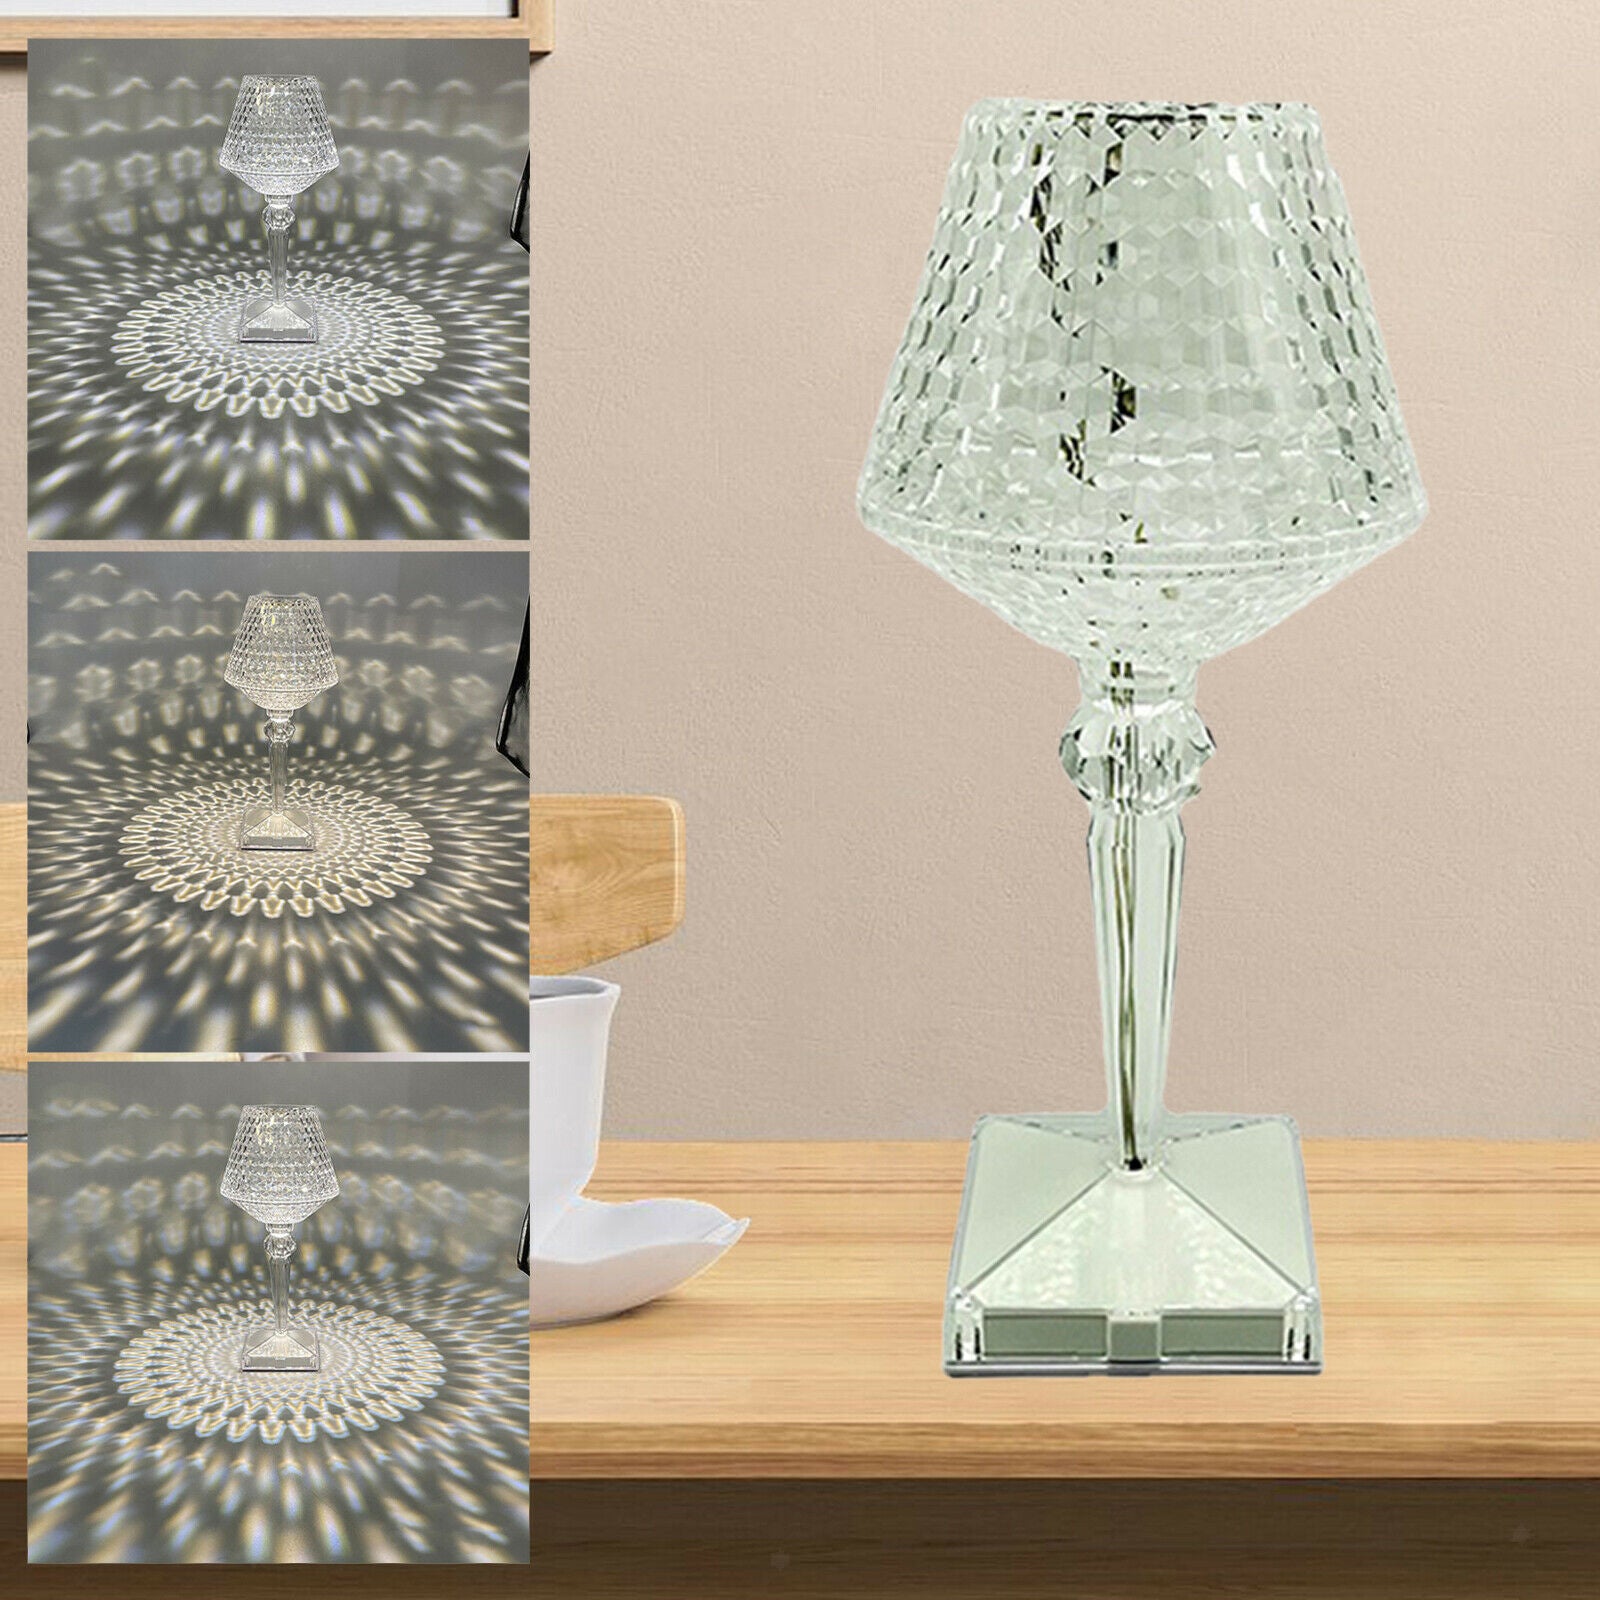 Goblet Table Lamp Bedside Desk LED Light Decorative for Bedroom Living Room